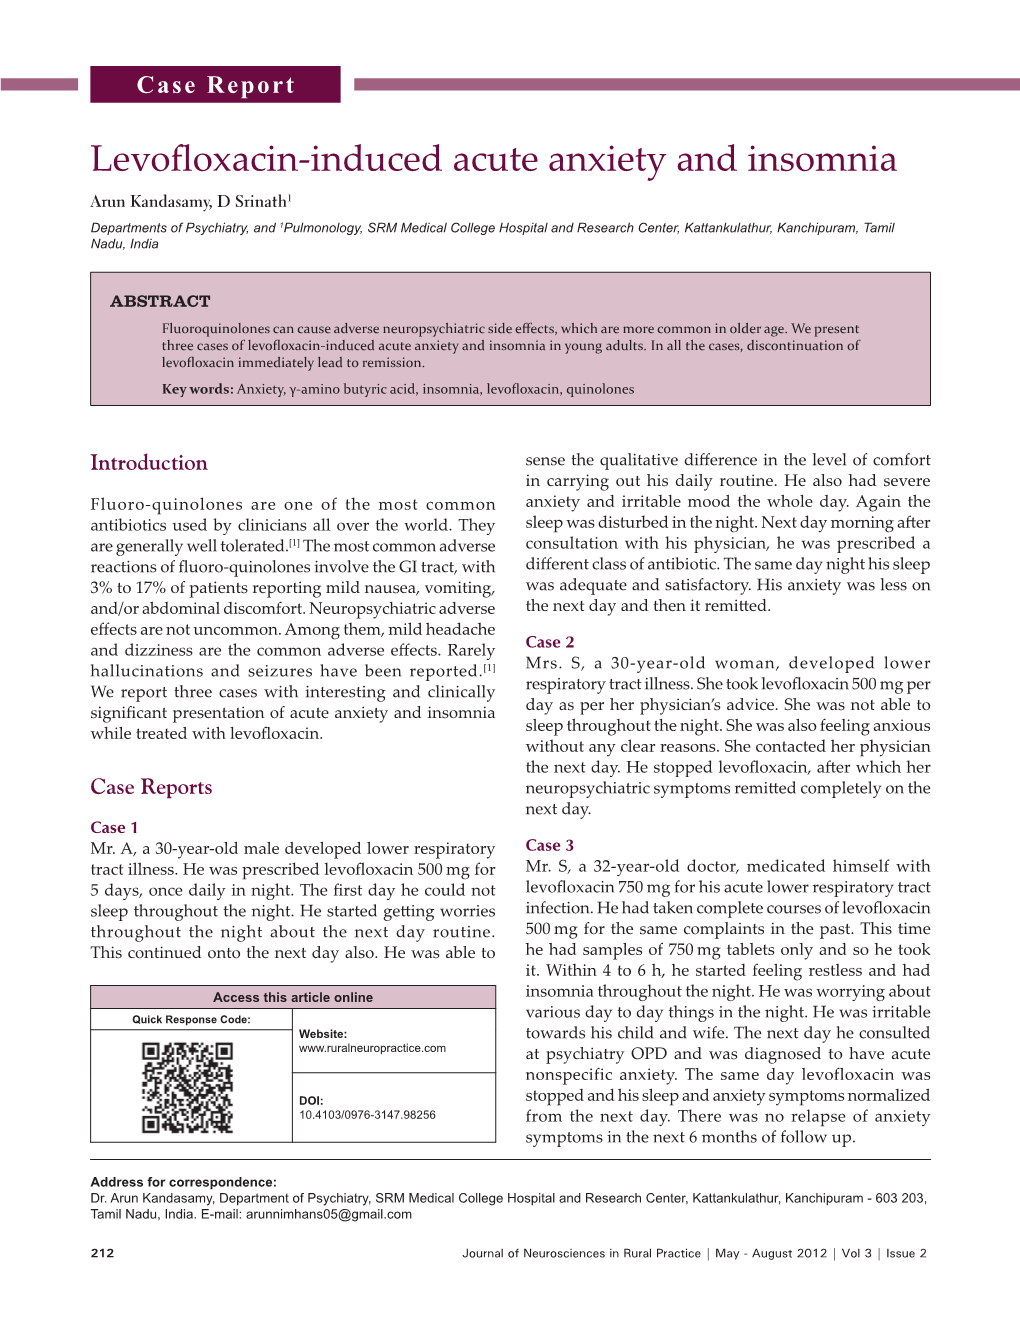 Levofloxacin-Induced Acute Anxiety and Insomnia